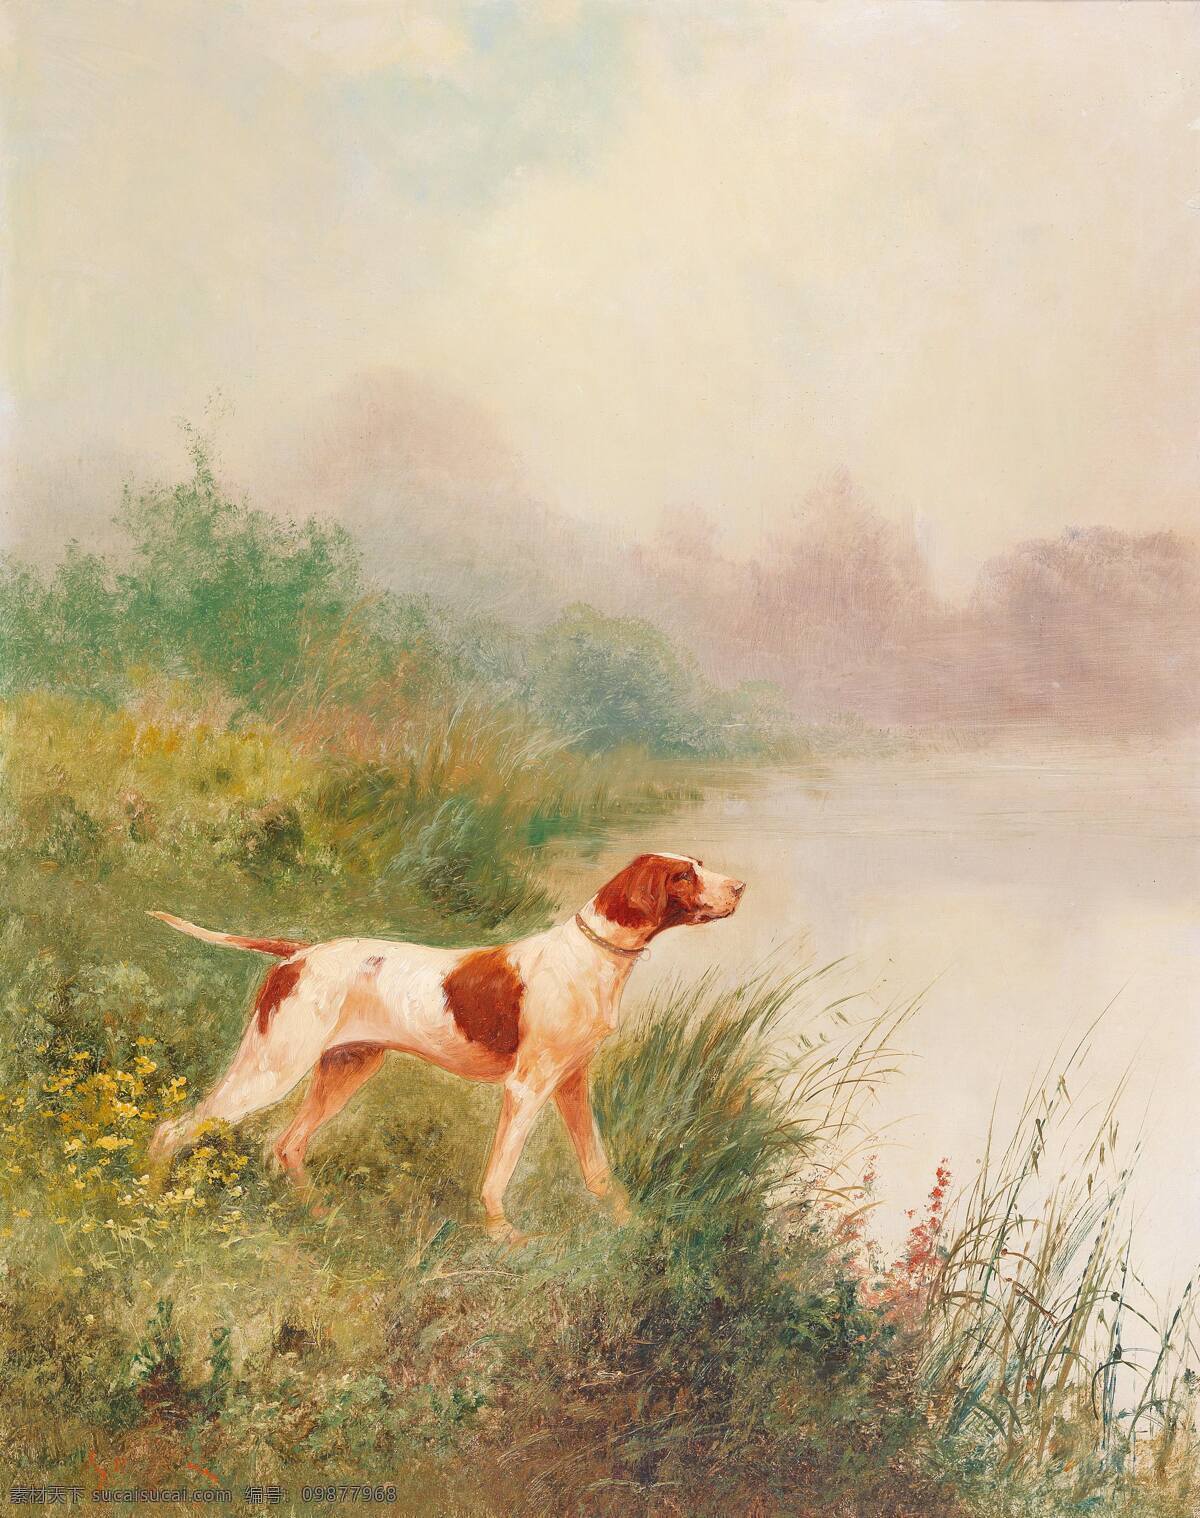 埃米尔 戈德 肖 作品 法国画家 猎犬 池塘 草丛 19世纪油画 油画 文化艺术 绘画书法